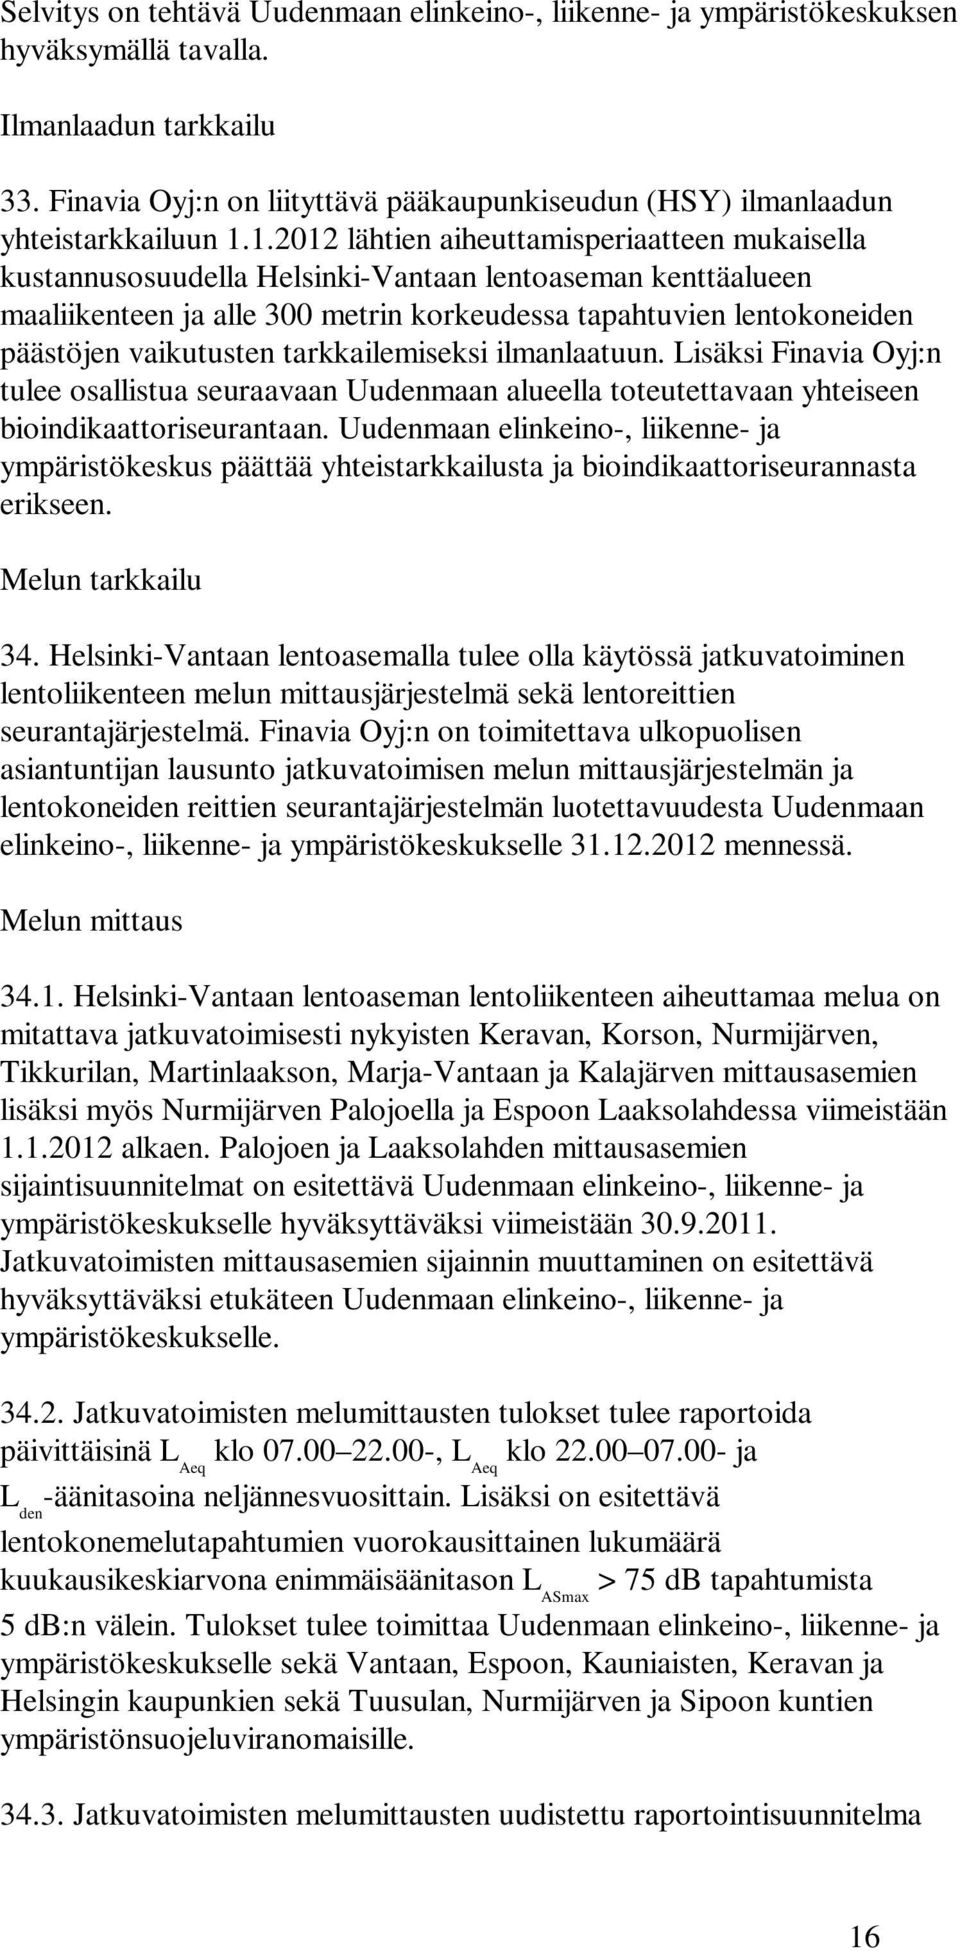 1.2012 lähtien aiheuttamisperiaatteen mukaisella kustannusosuudella Helsinki-Vantaan lentoaseman kenttäalueen maaliikenteen ja alle 300 metrin korkeudessa tapahtuvien lentokoneiden päästöjen